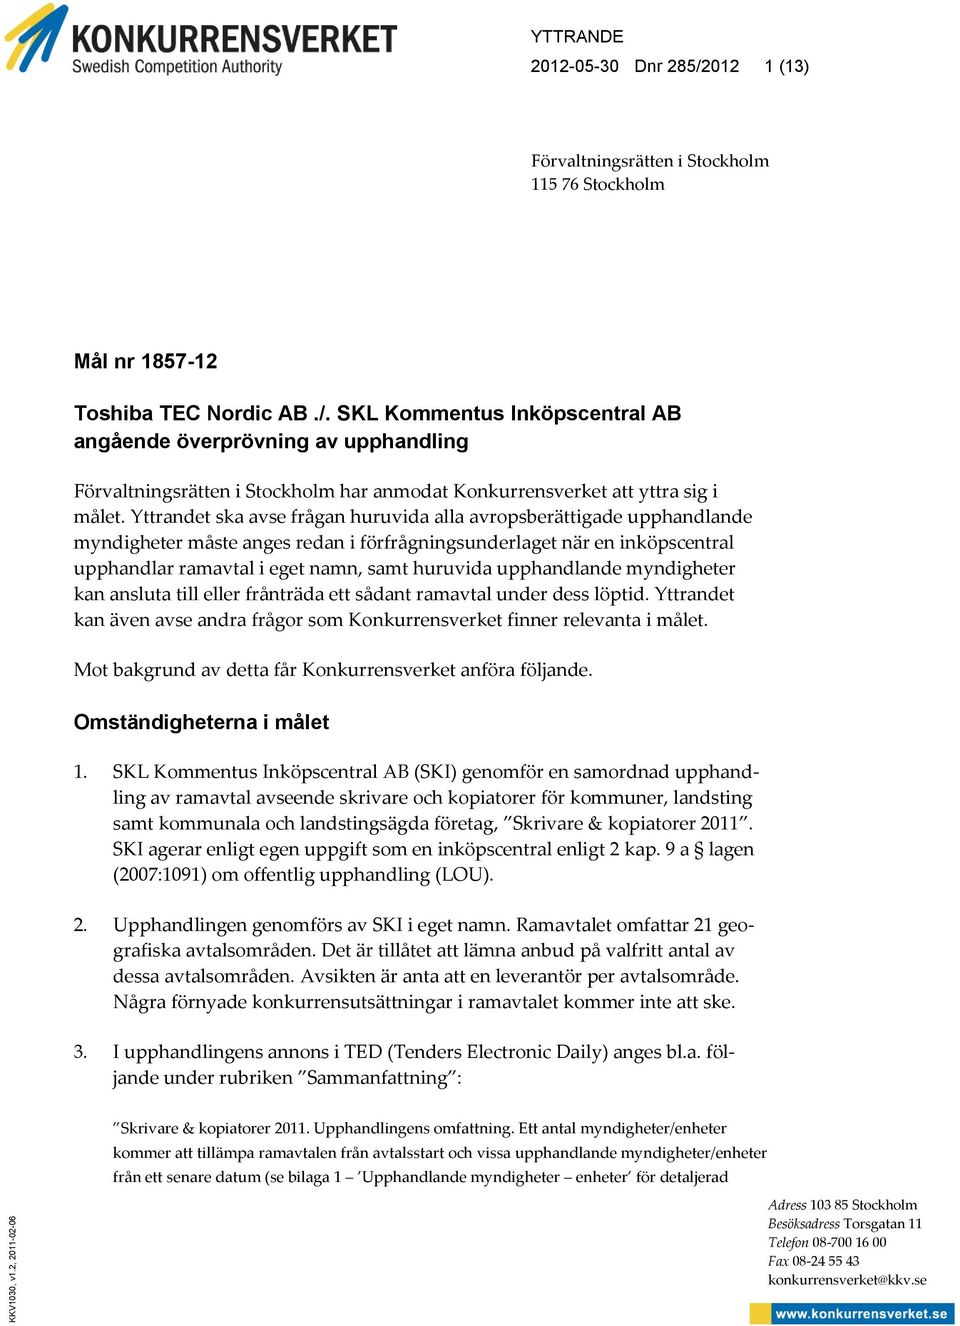 SKL Kommentus Inköpscentral AB angående överprövning av upphandling Förvaltningsrätten i Stockholm har anmodat Konkurrensverket att yttra sig i målet.